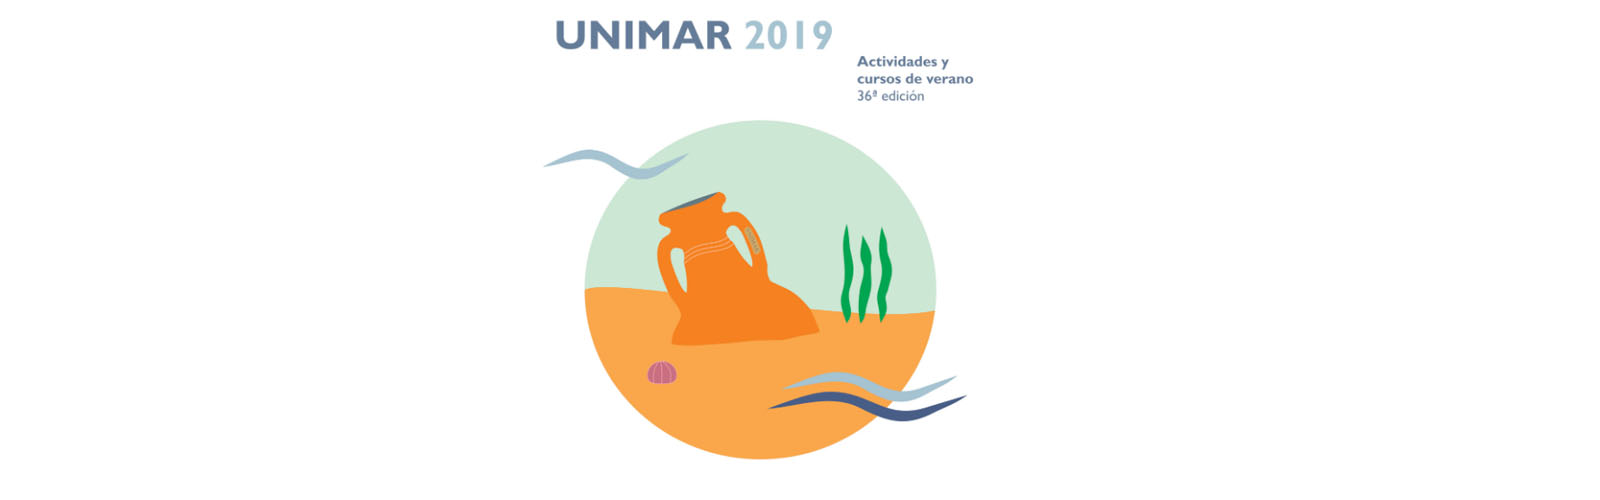 La Universidad Internacional del Mar convoca premios para diseñar su logotipo y su campaña publicitaria 2020